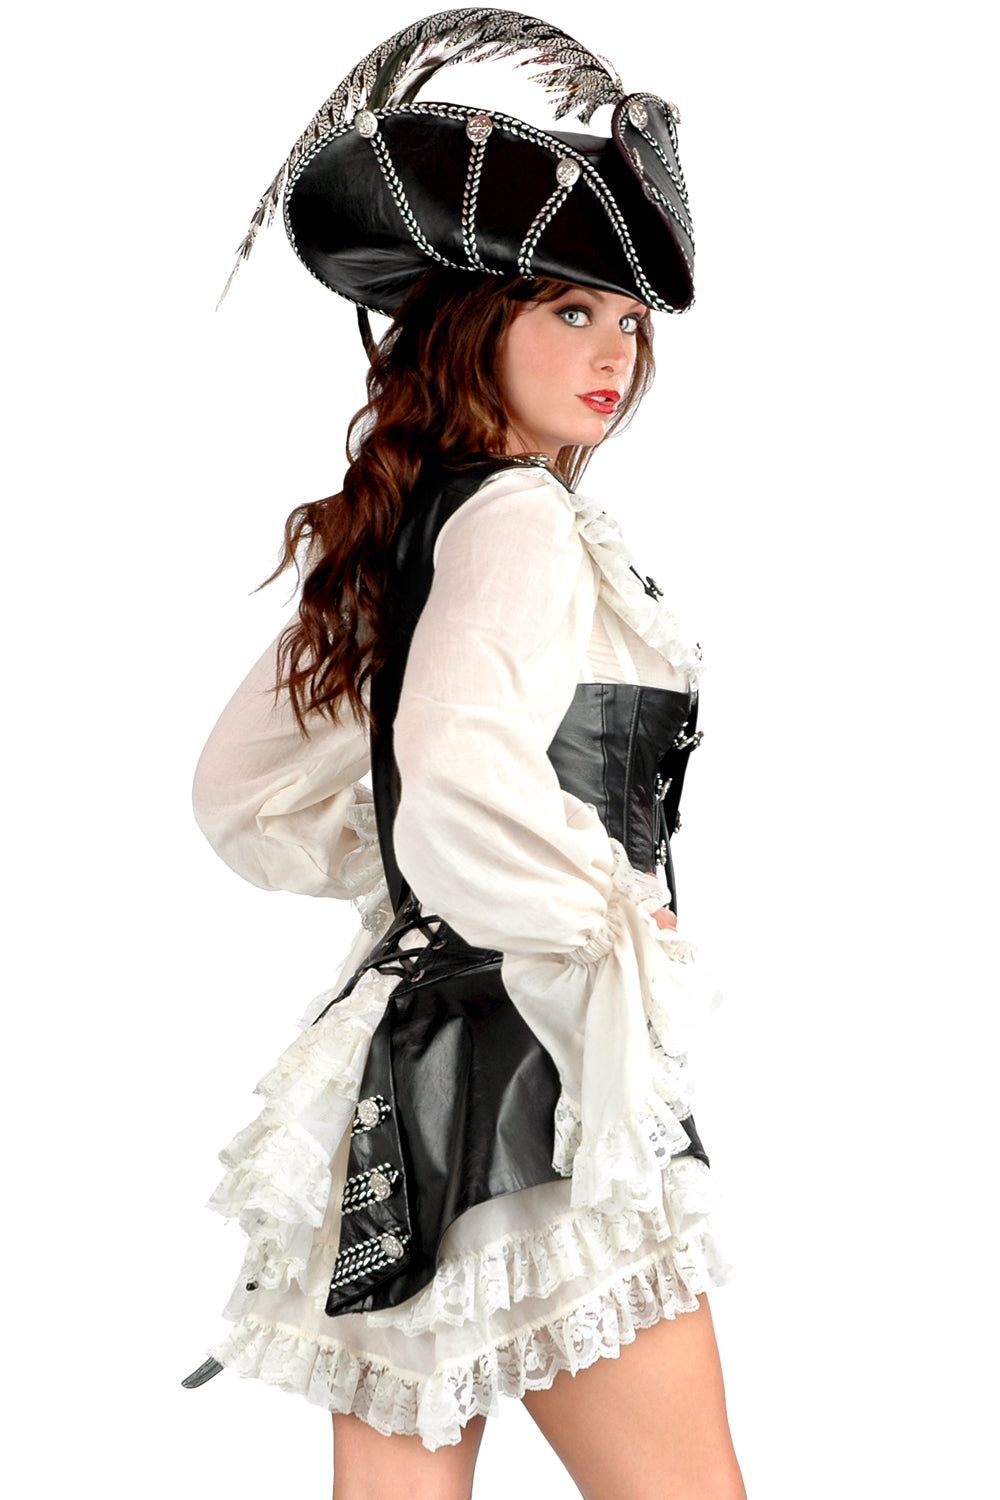 Rogue Pirate Under Dress